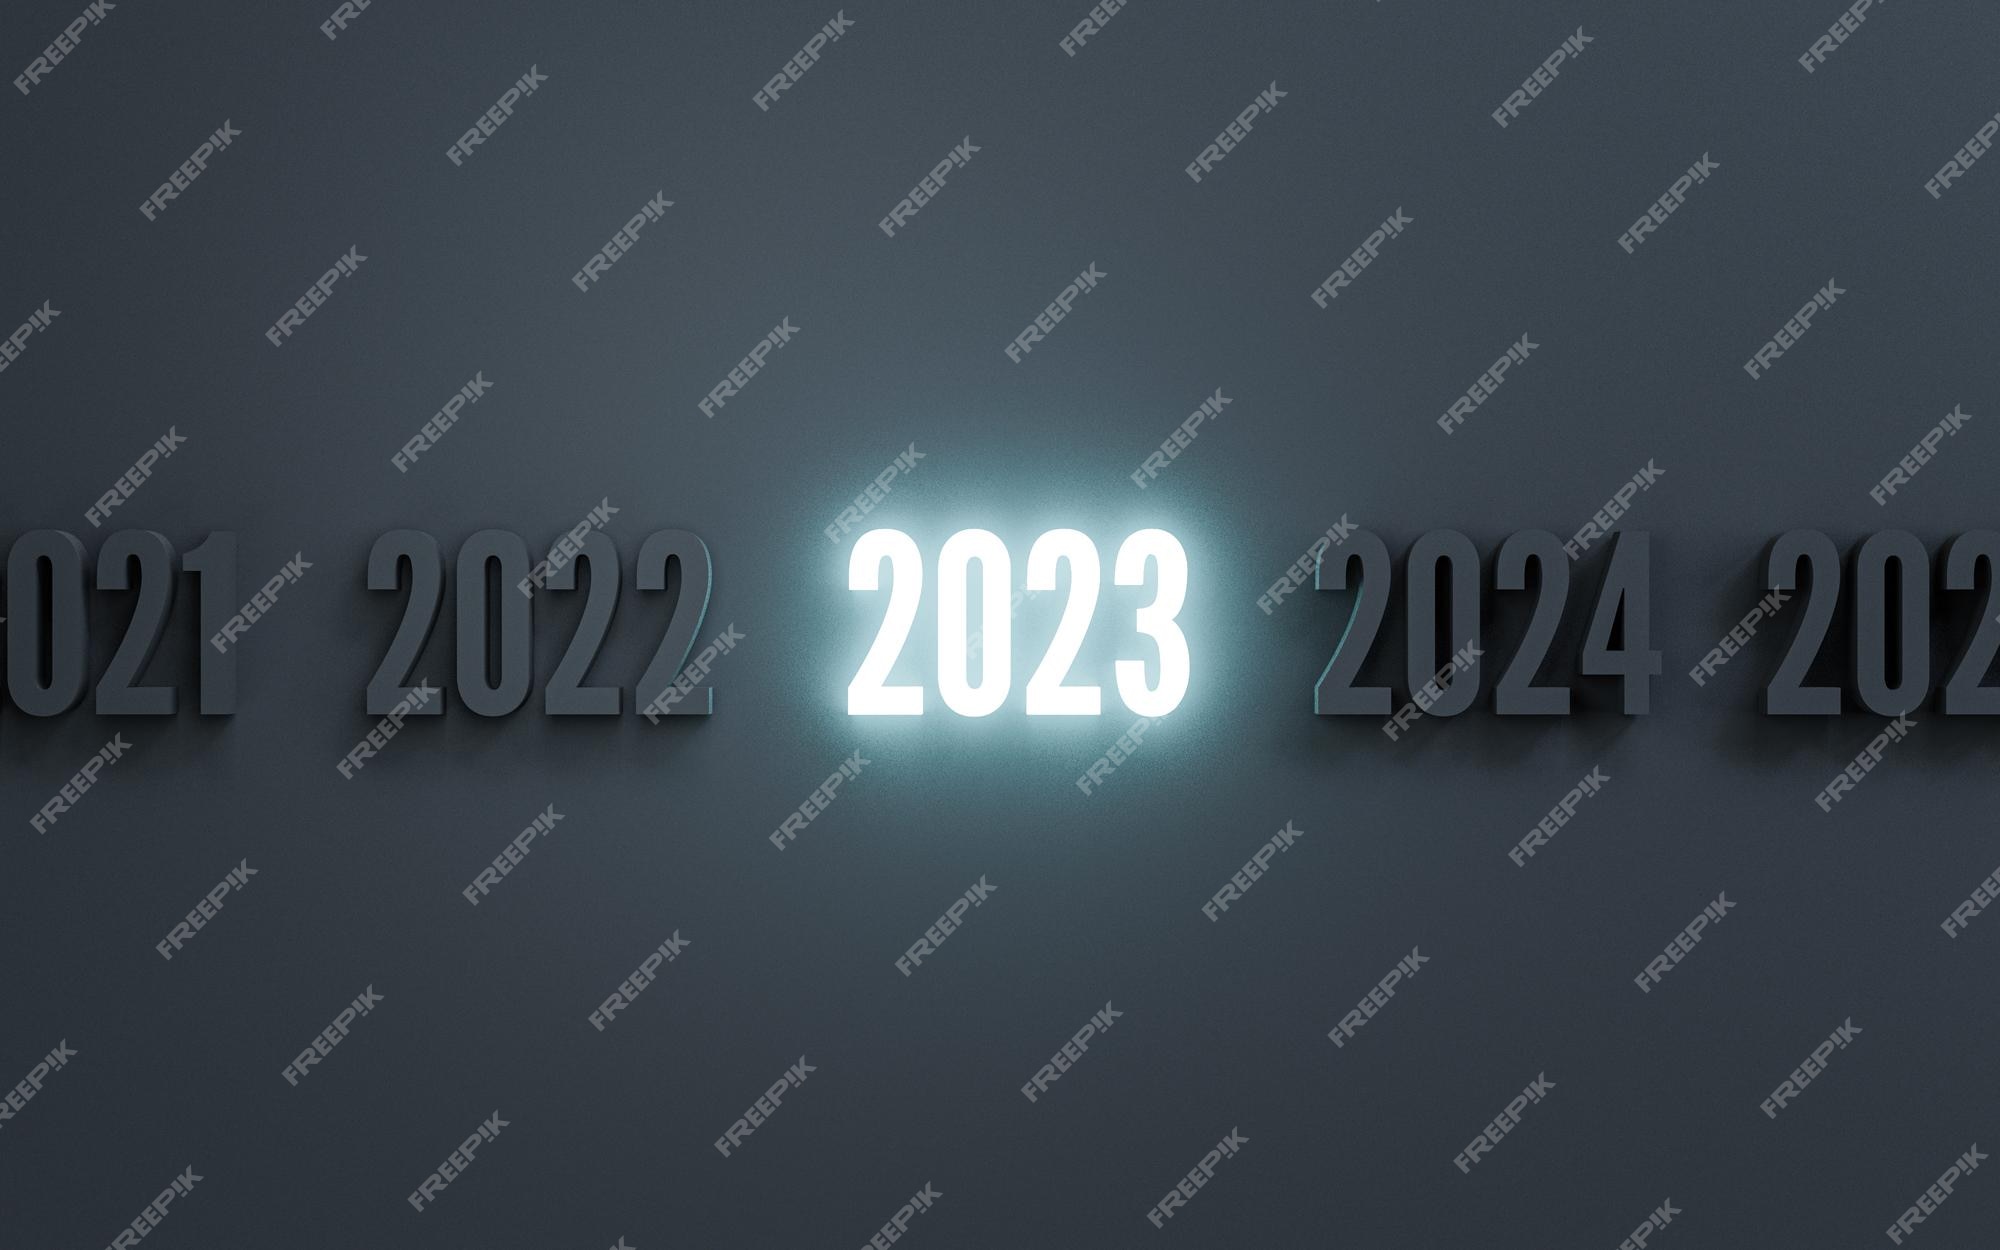 Đèn neon số 2024 trên nền đen bình thường là một trong những hình ảnh tuyệt vời để tạo ra không gian tối giản và hiện đại. Đèn neon sẽ phát sáng và làm nổi bật số 2024 trên nền đen bình thường, tạo ra một vẻ đẹp độc đáo và ấn tượng. Hãy khám phá hình ảnh và thử áp dụng ý tưởng này trong thiết kế của bạn.